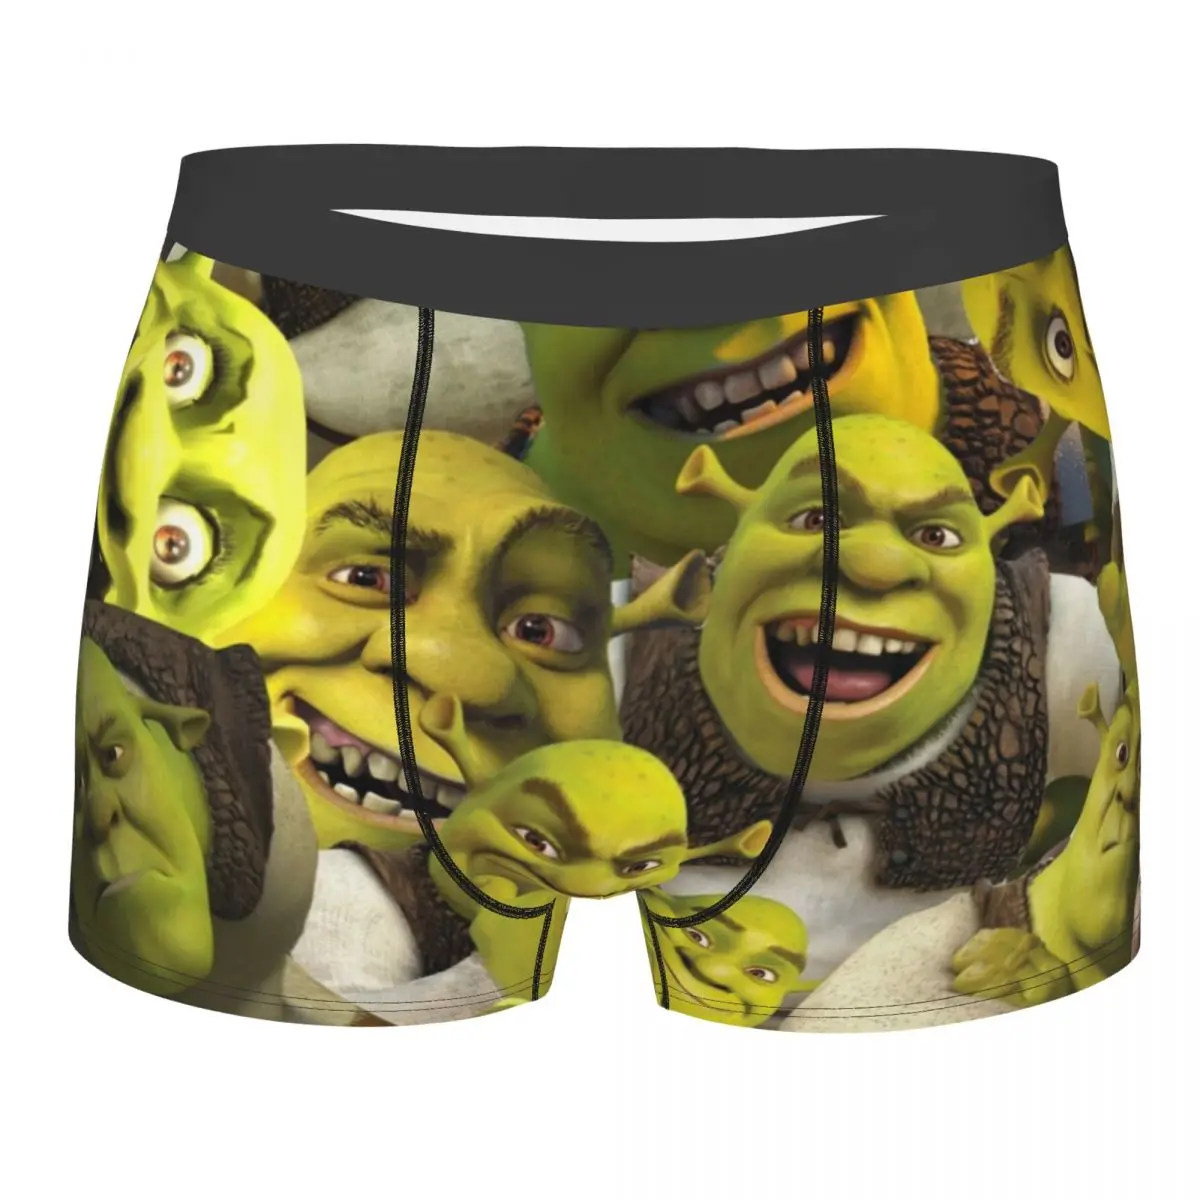 Man Shrek Collage Love Funny Meme Underwear Hot Boxer Briefs Shorts Panties Male Breathable Underpants Plus Size